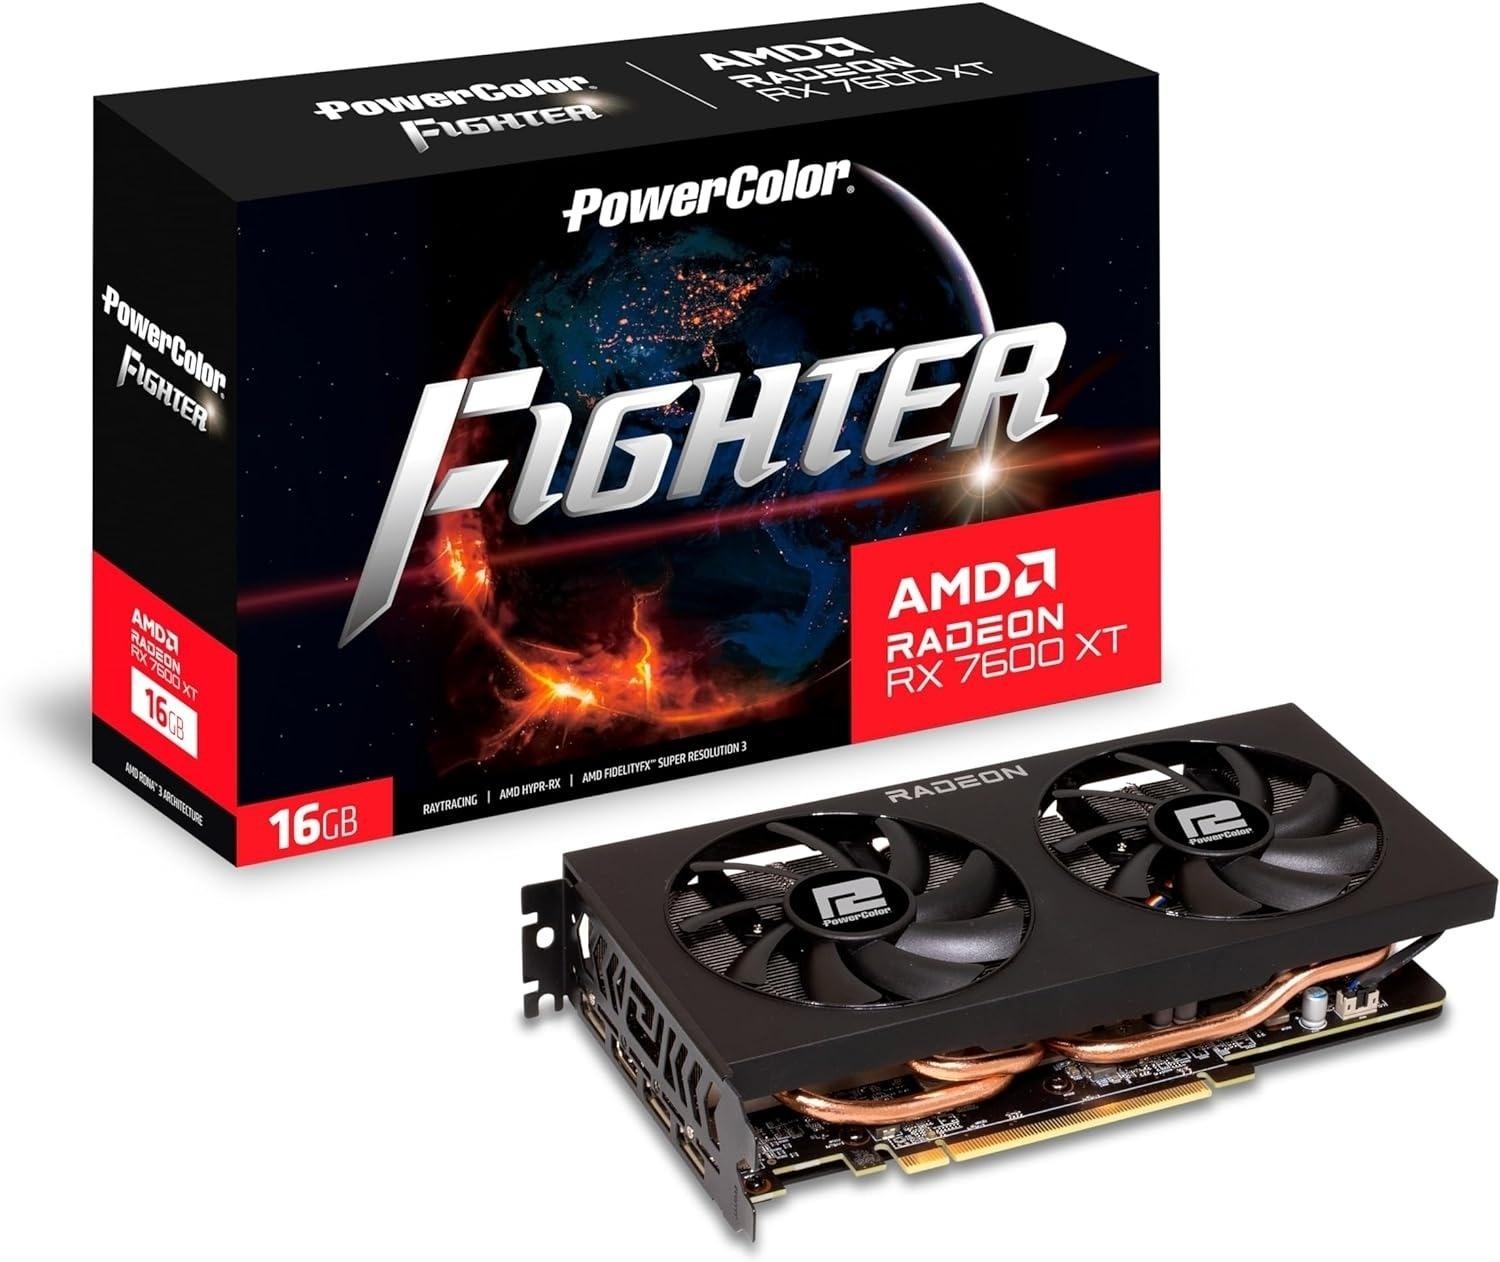 Selected image for Power Color Fighter RX7600XT Grafička karta, 16G-F, AMD, 16GB GDDR6, 128bit